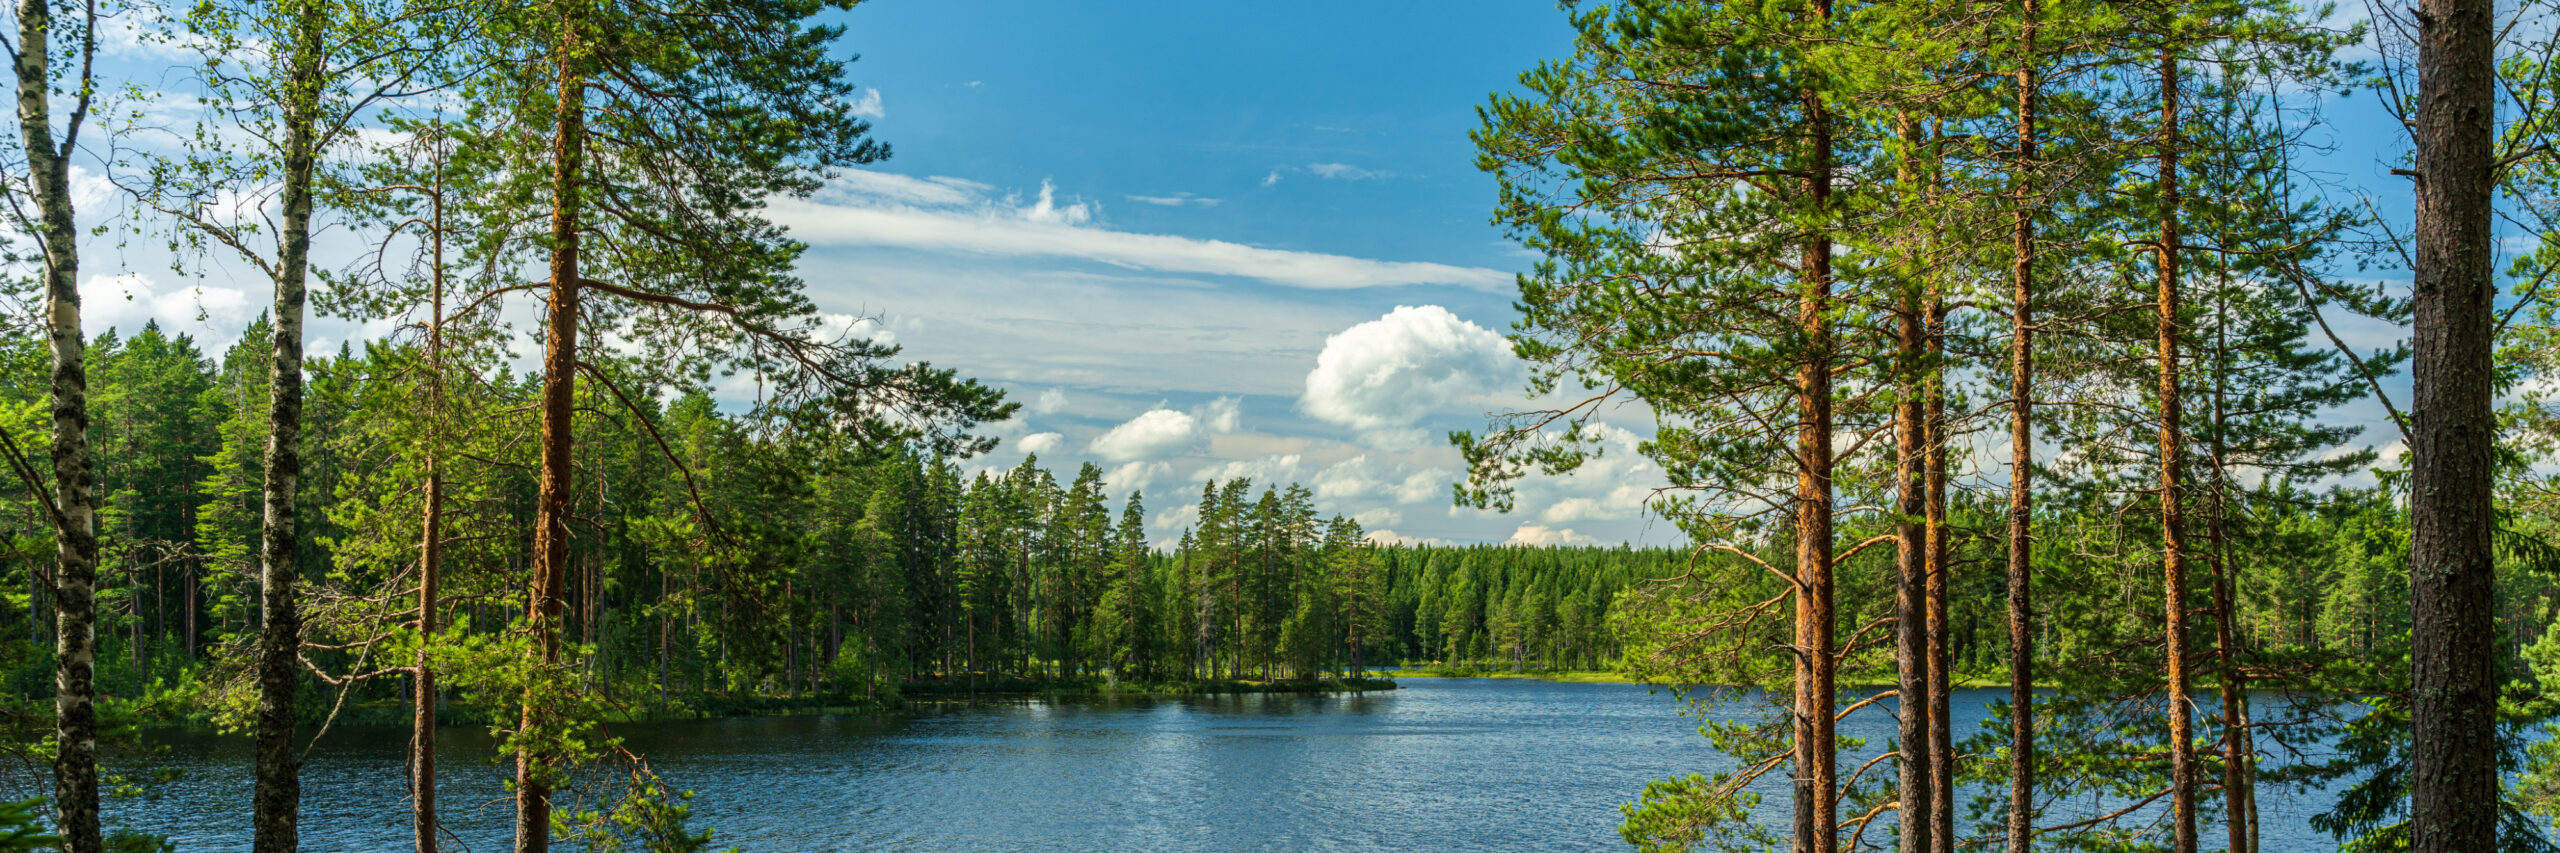 sweden-wild-nature